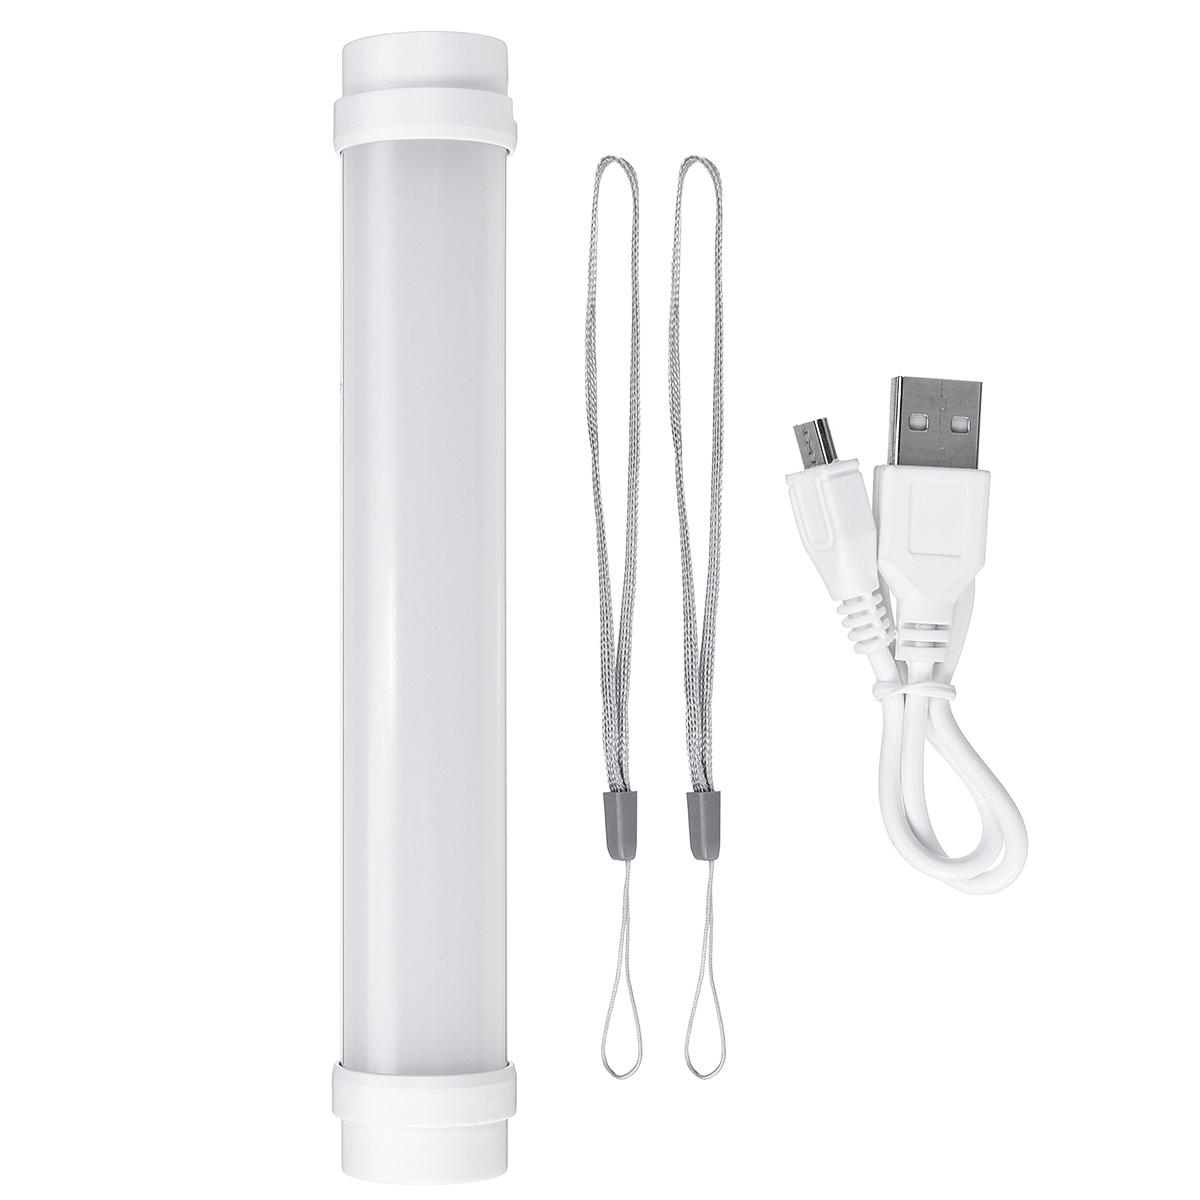 Lâmpada LED de tenda de acampamento ao ar livre, tubo de luz de emergência e carregador USB de banco de energia de 1800mAh